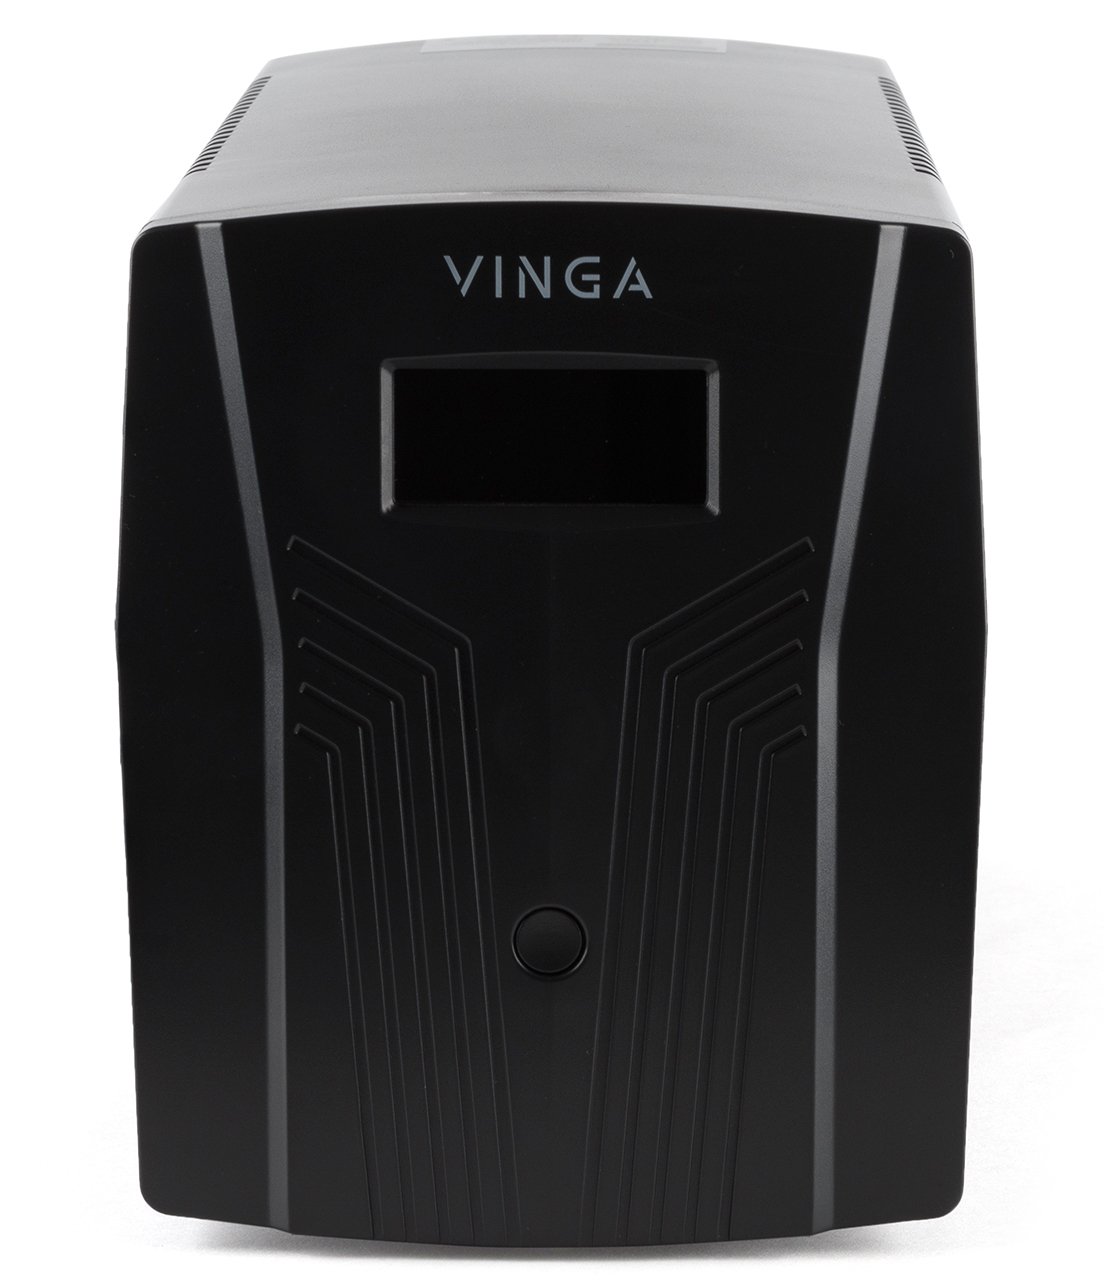 Источник бесперебойного питания Vinga LCD 1500VA (VPC-1500P) обзор - фото 11